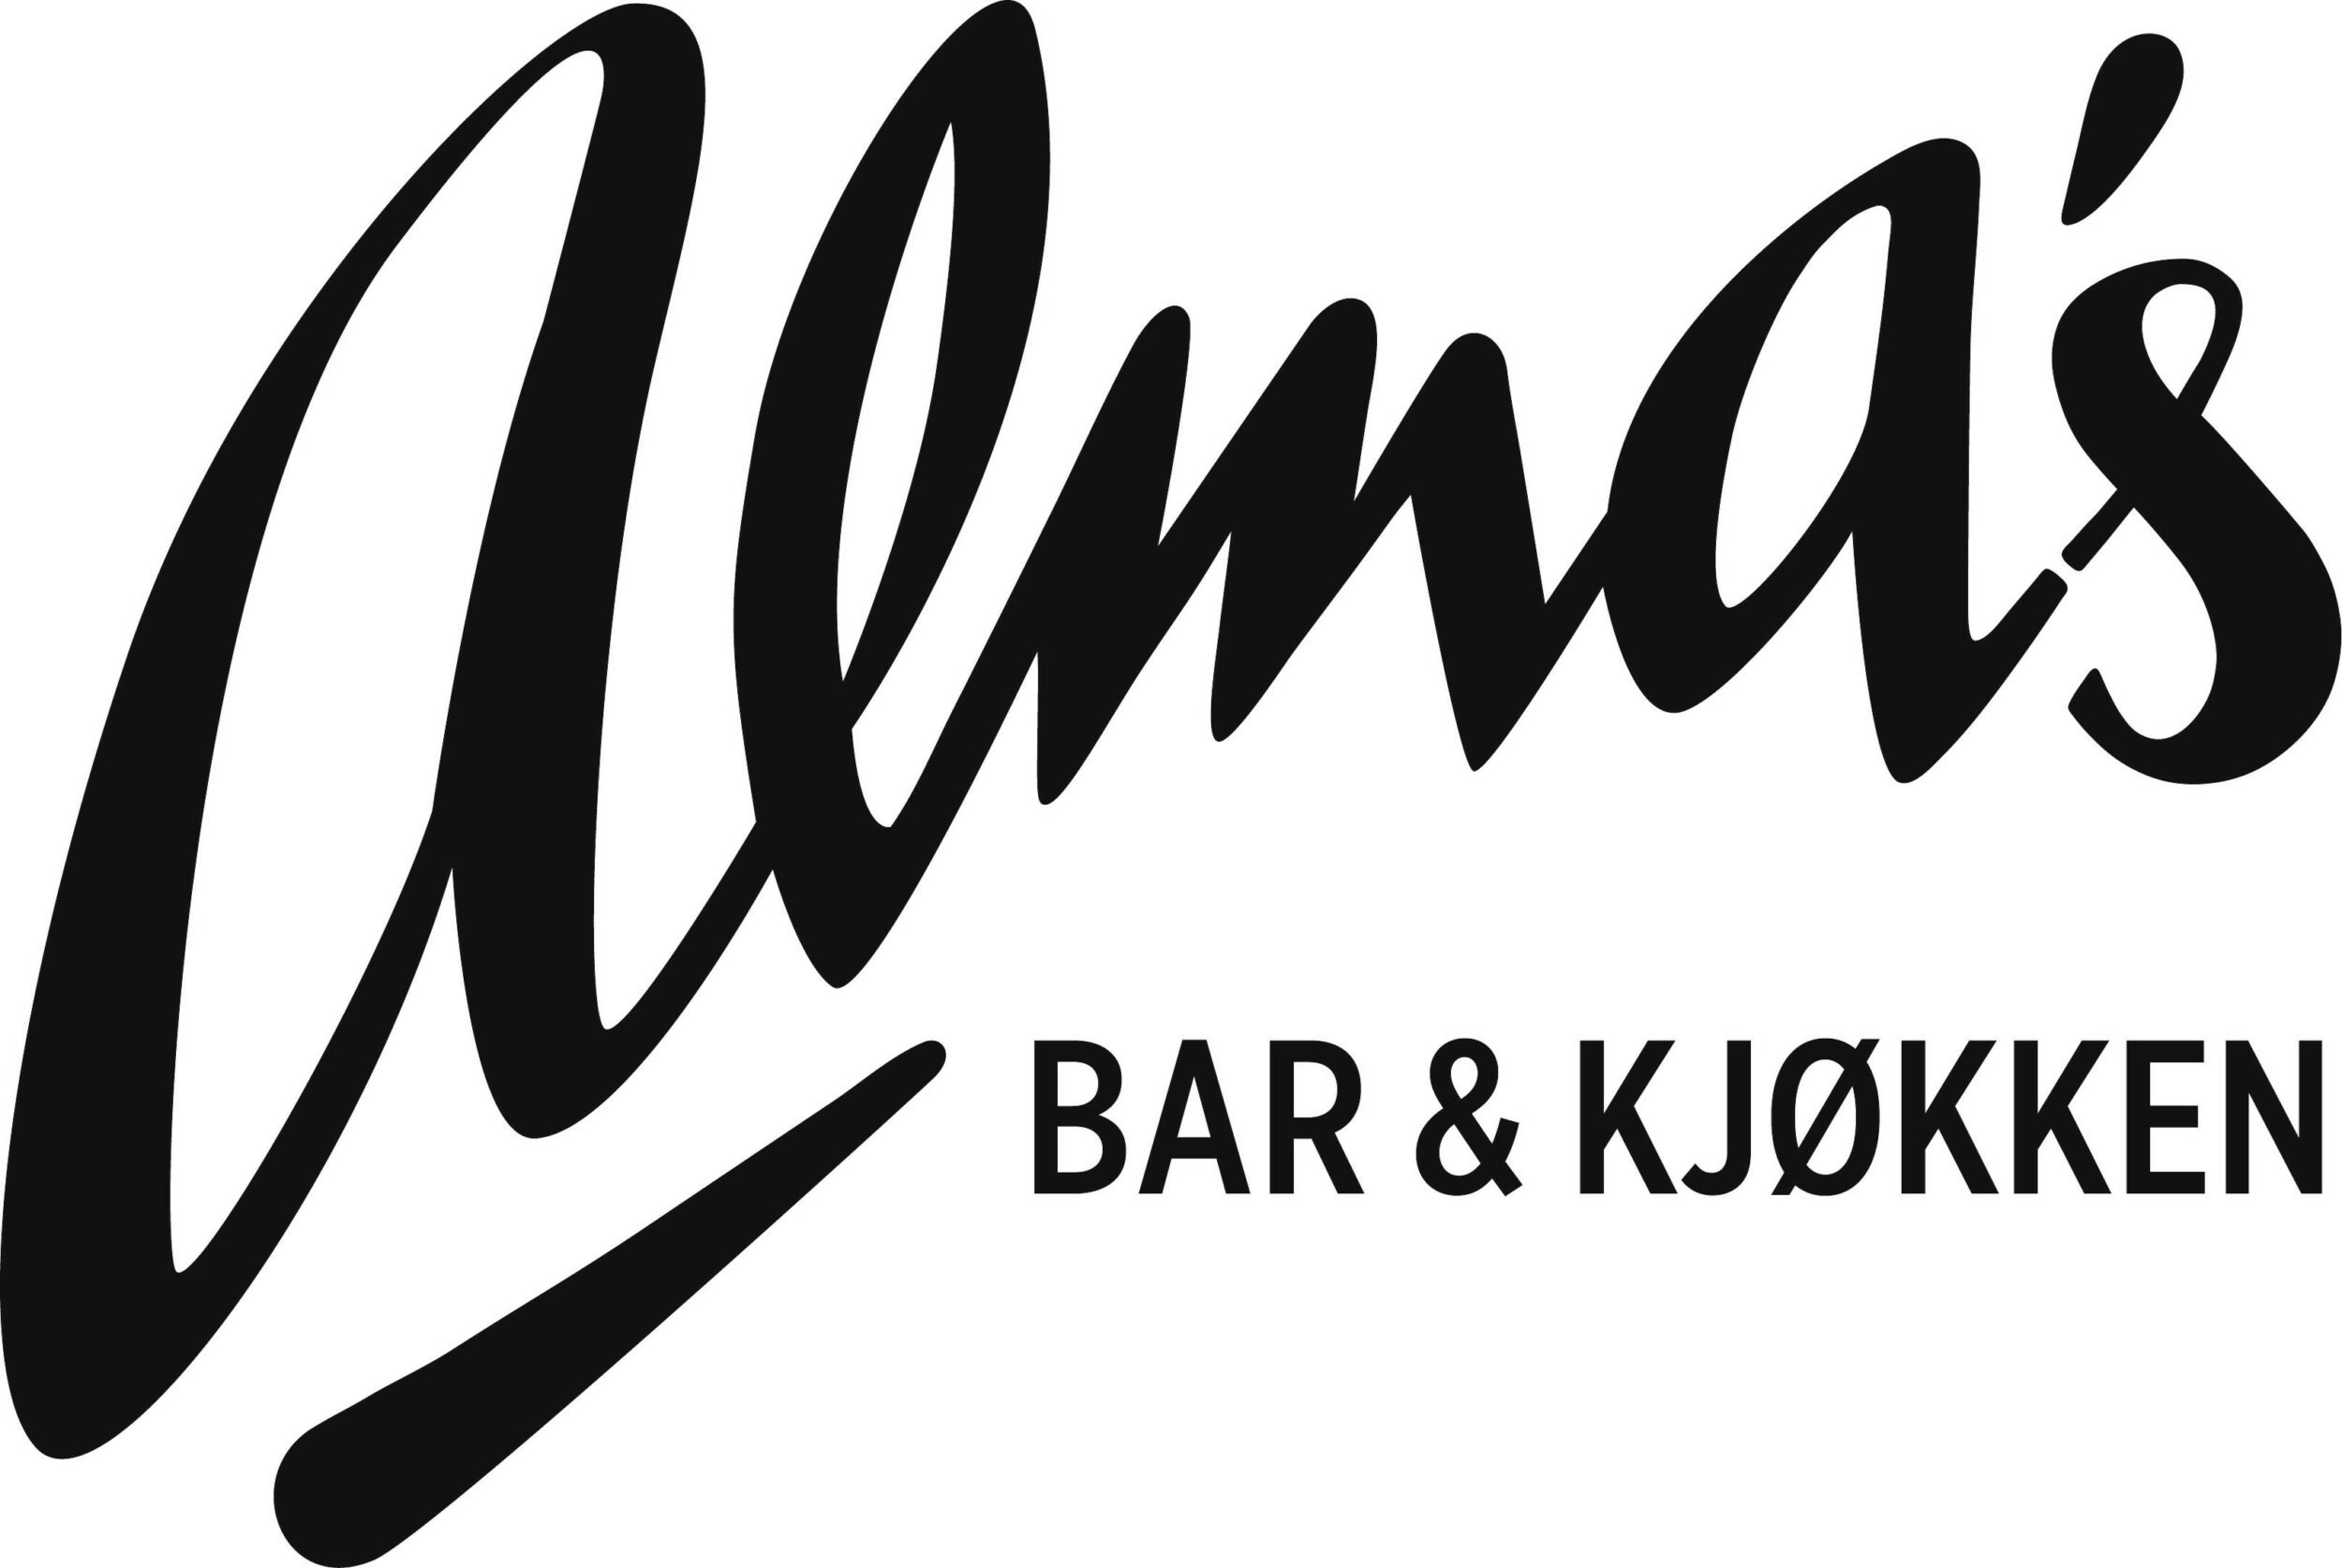 Alma's